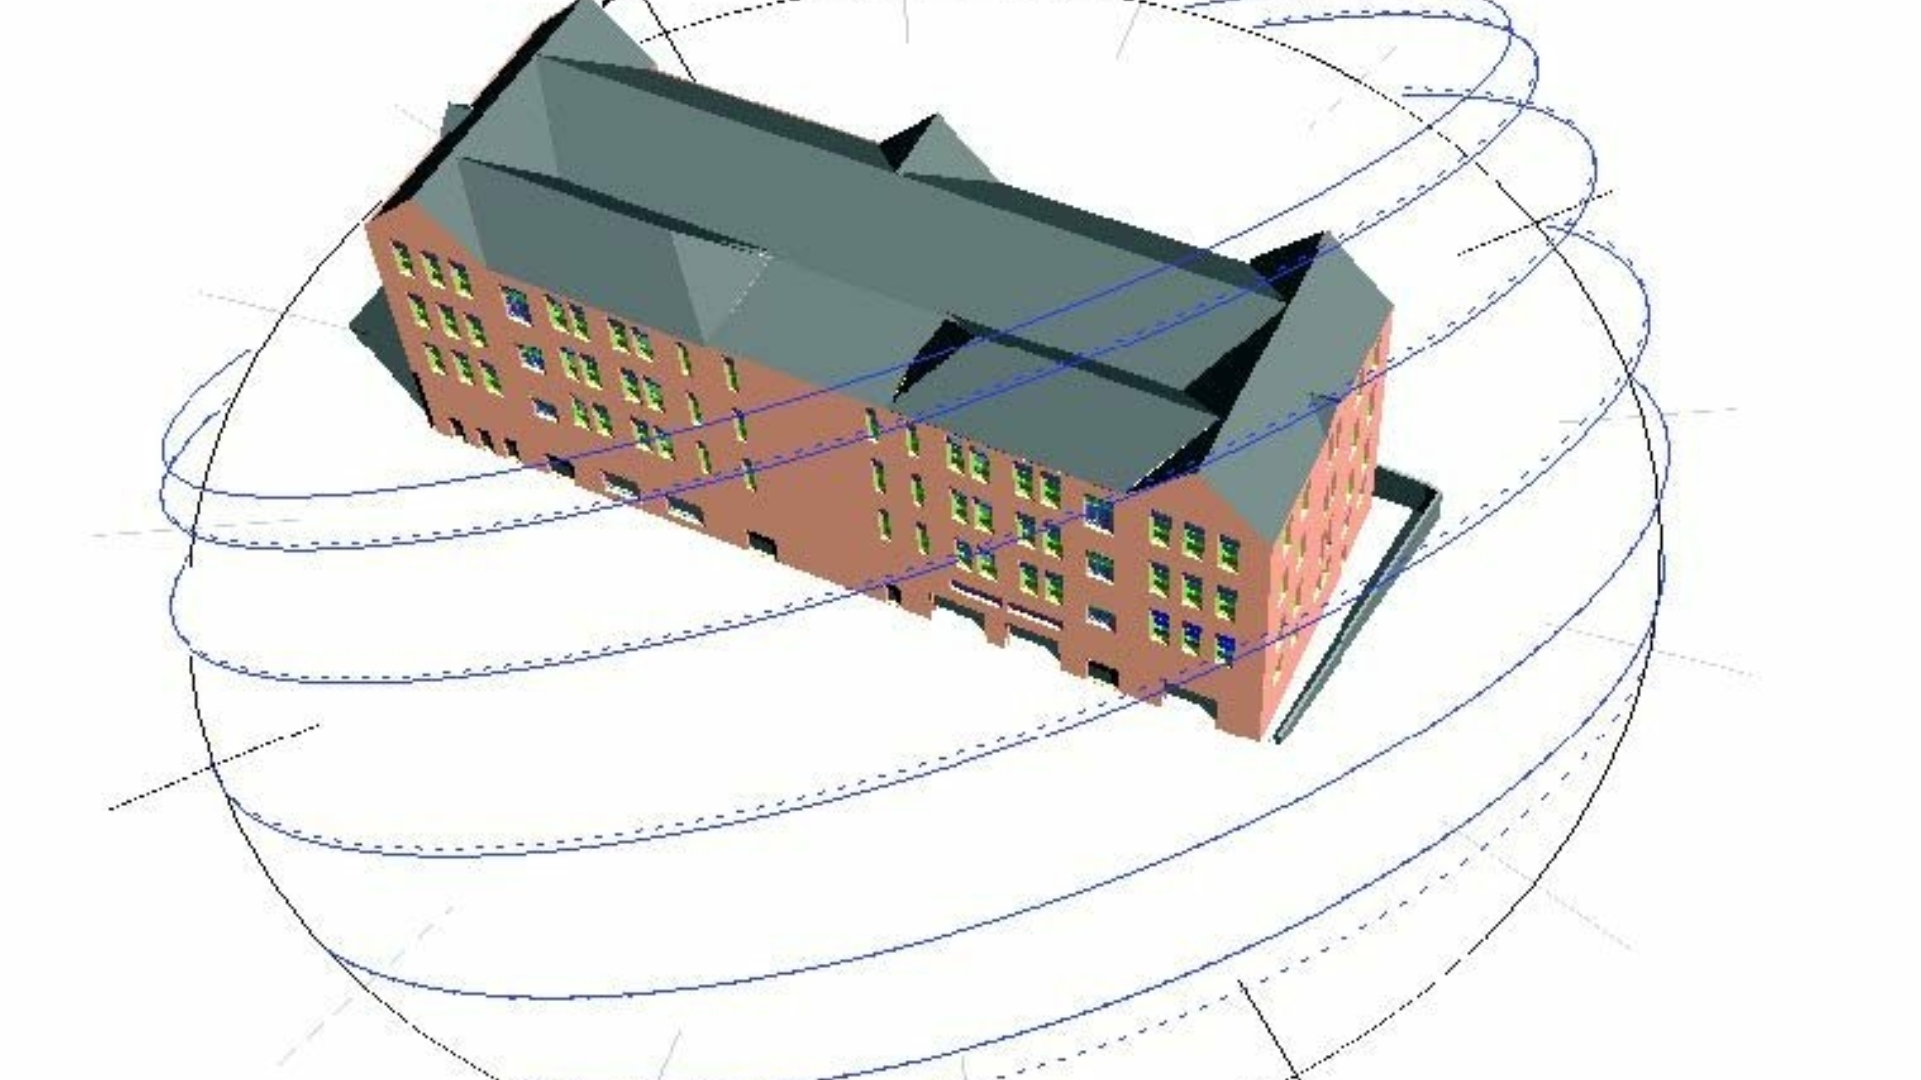 Rutland Street Dynamic Building Simulation